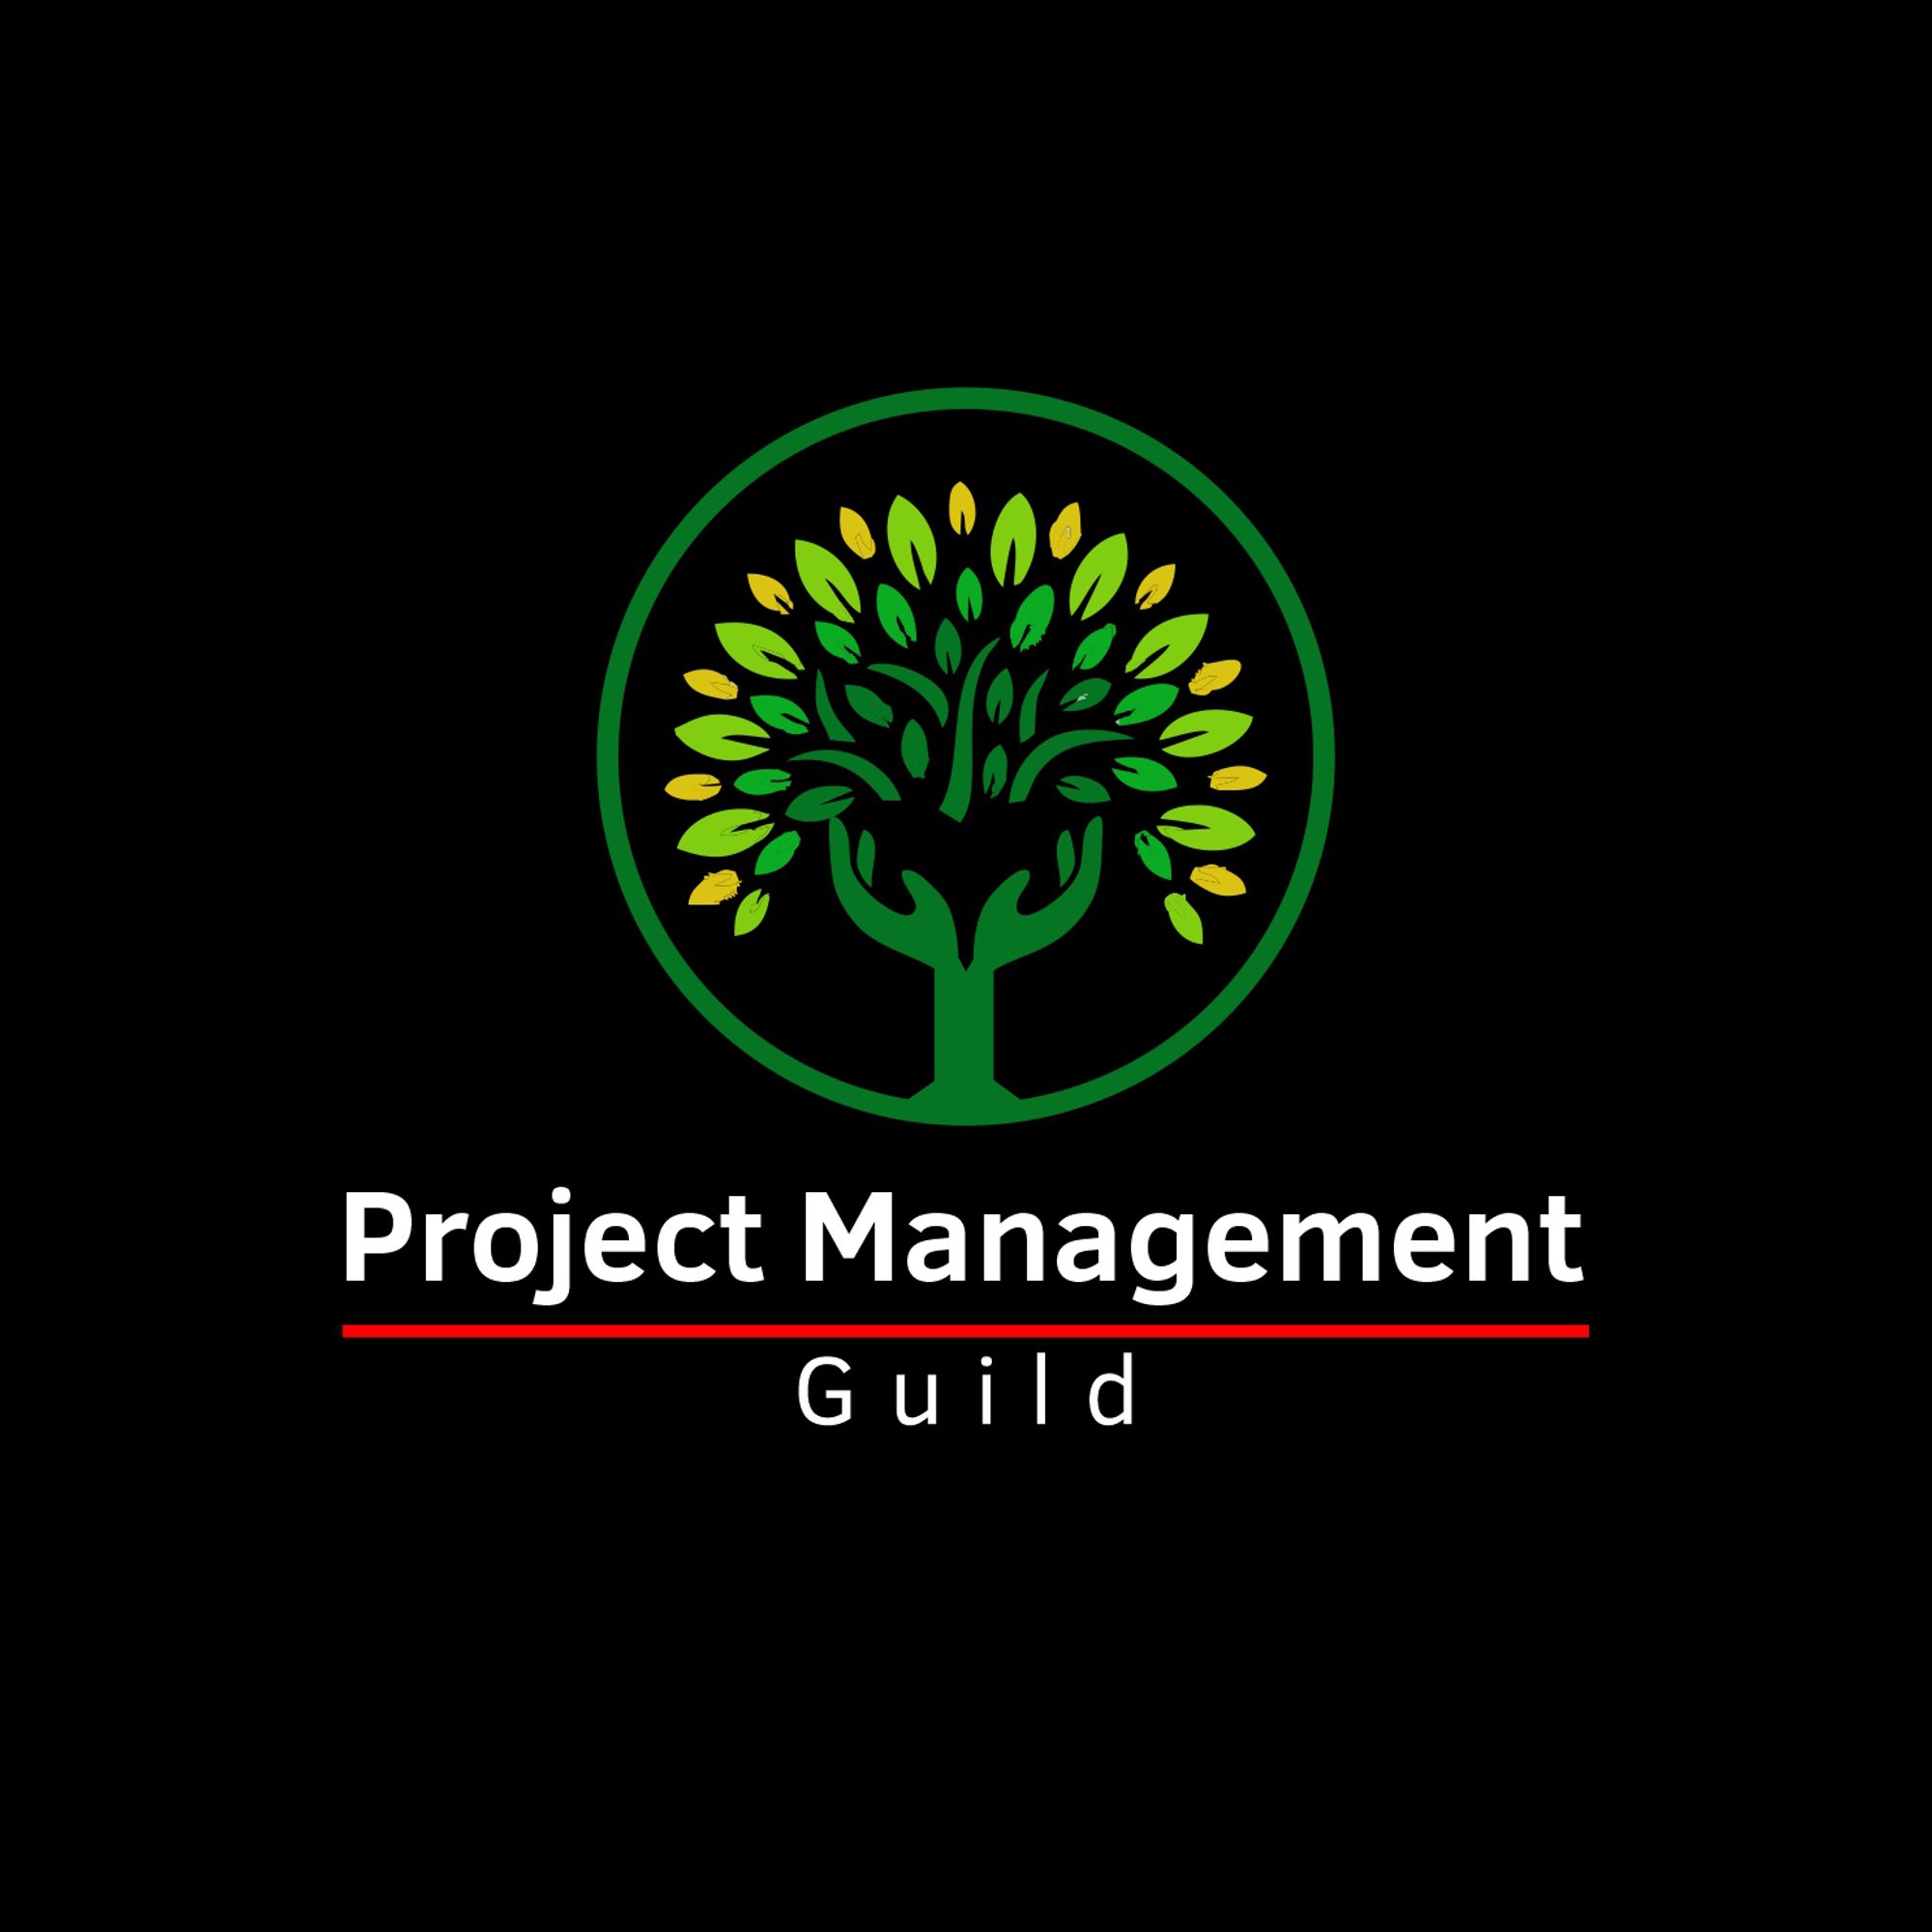 Project Management Guild